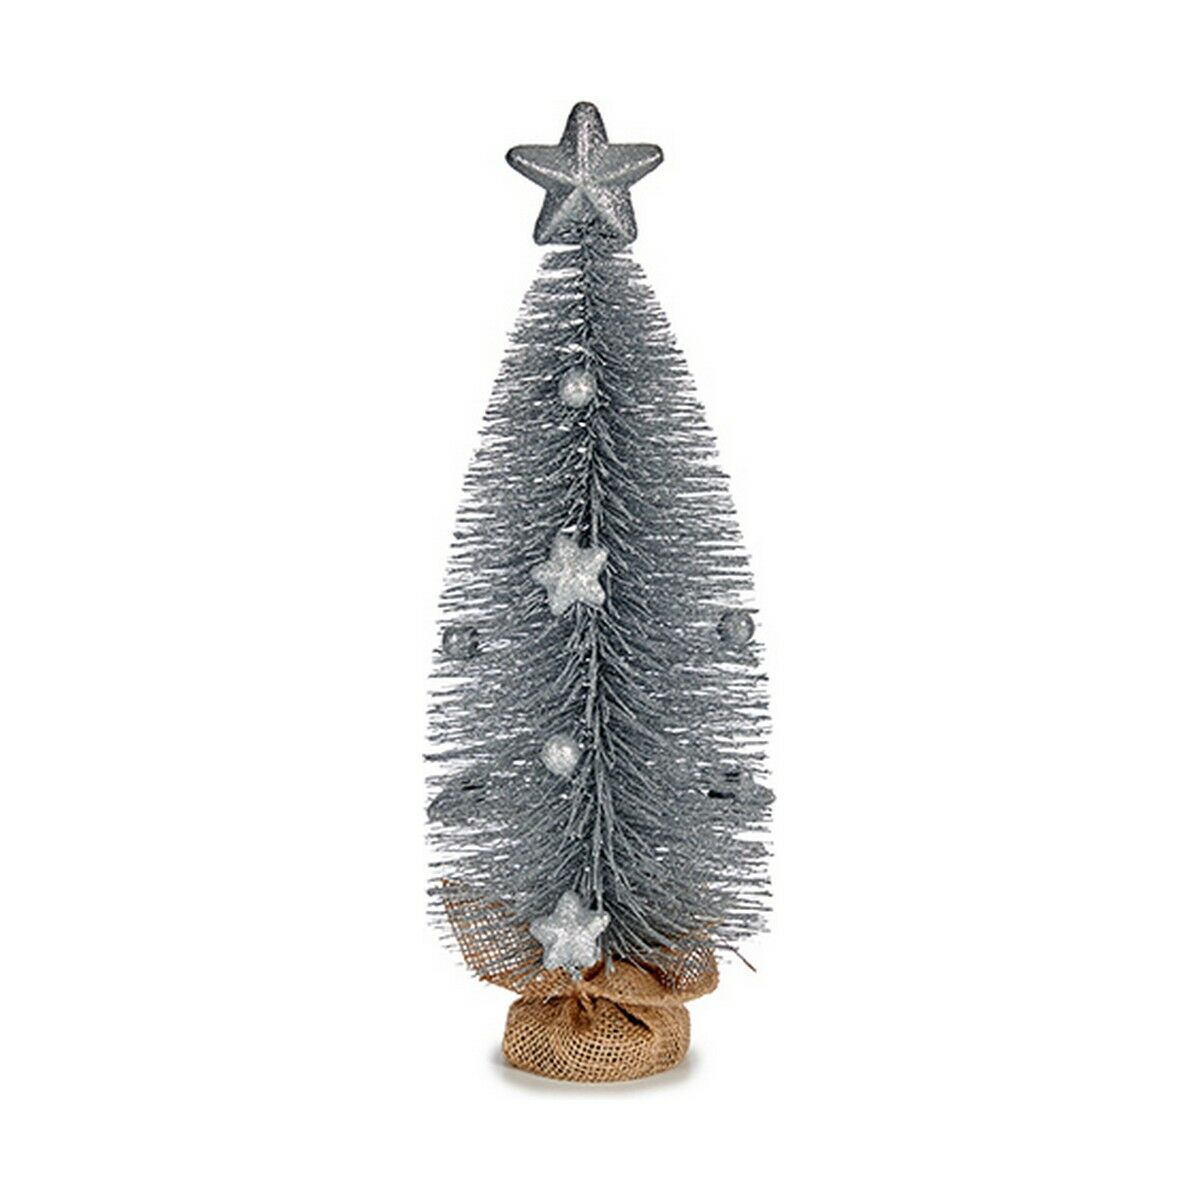 Weihnachtsbaum mit Stern Silberfarben 13 x 41 x 13 cm